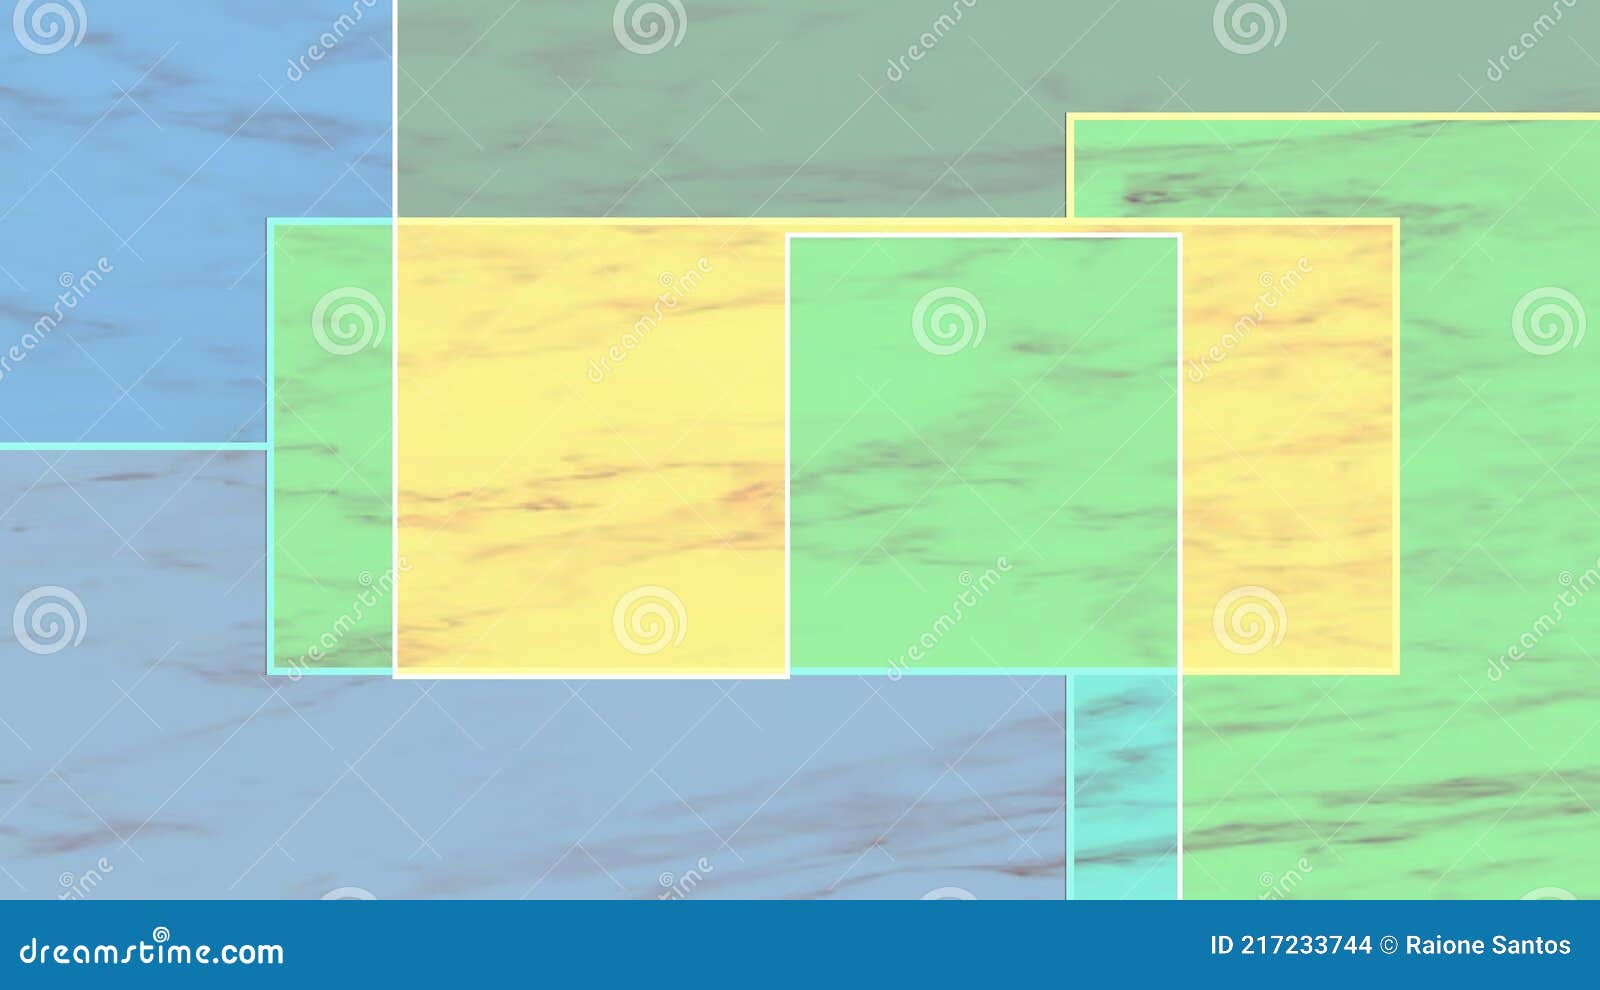 imagem exclusiva geometrica verde com azul e amarelo .